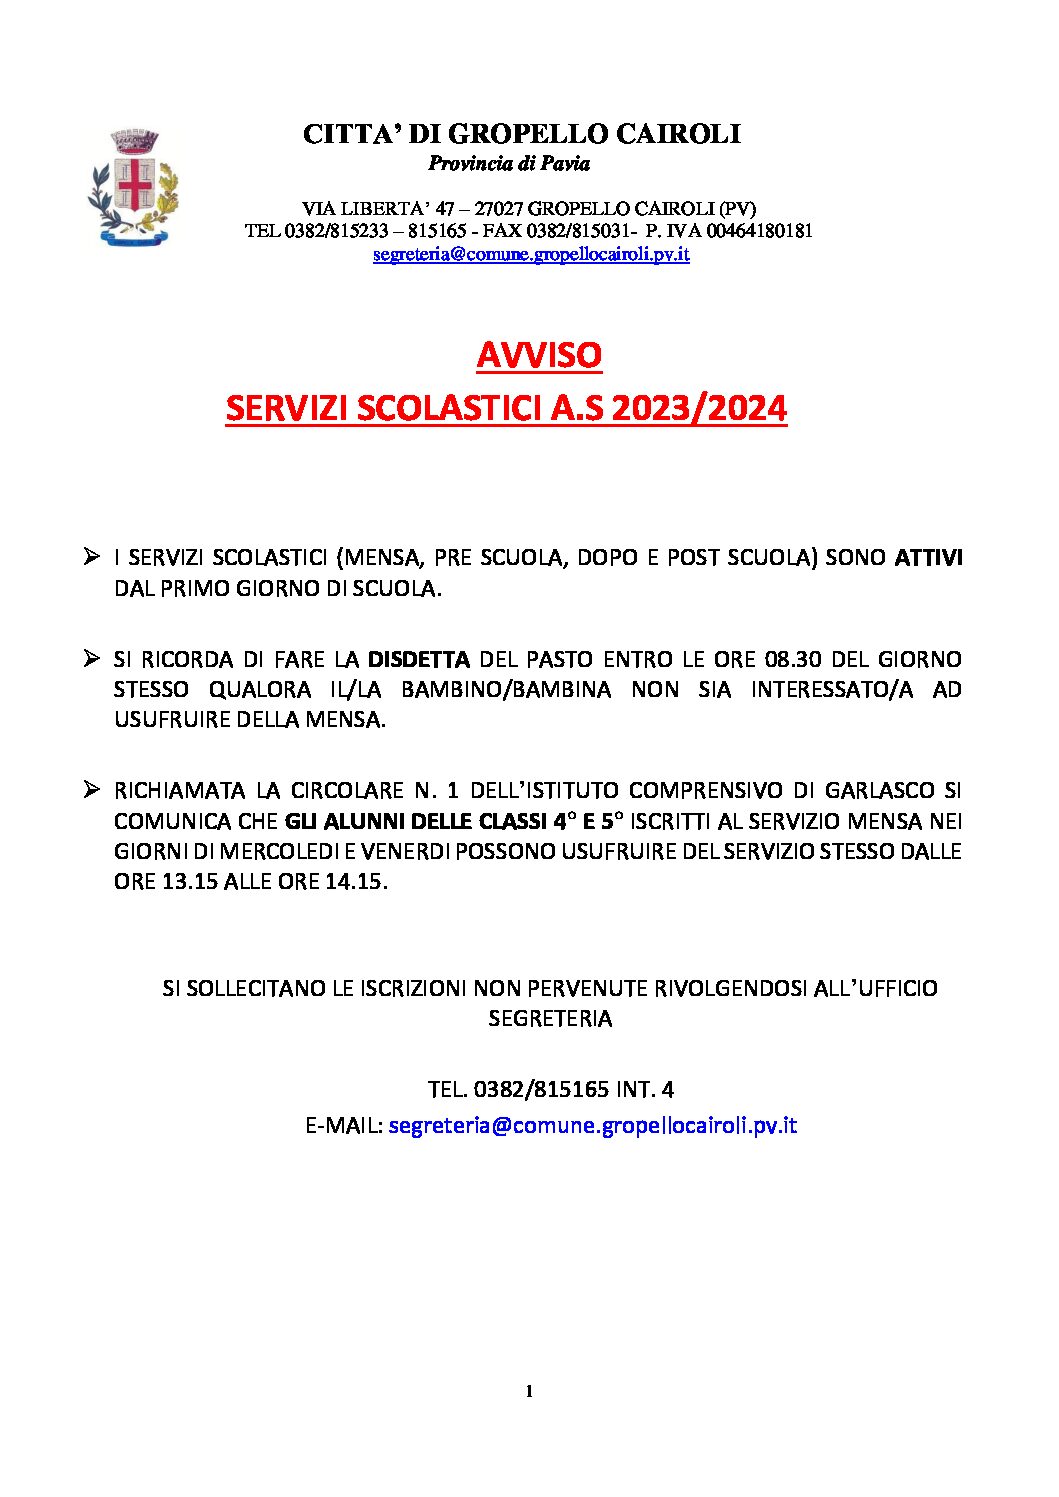 AVVISO SERVIZI SCOLASTICI A.S. 2023/2024